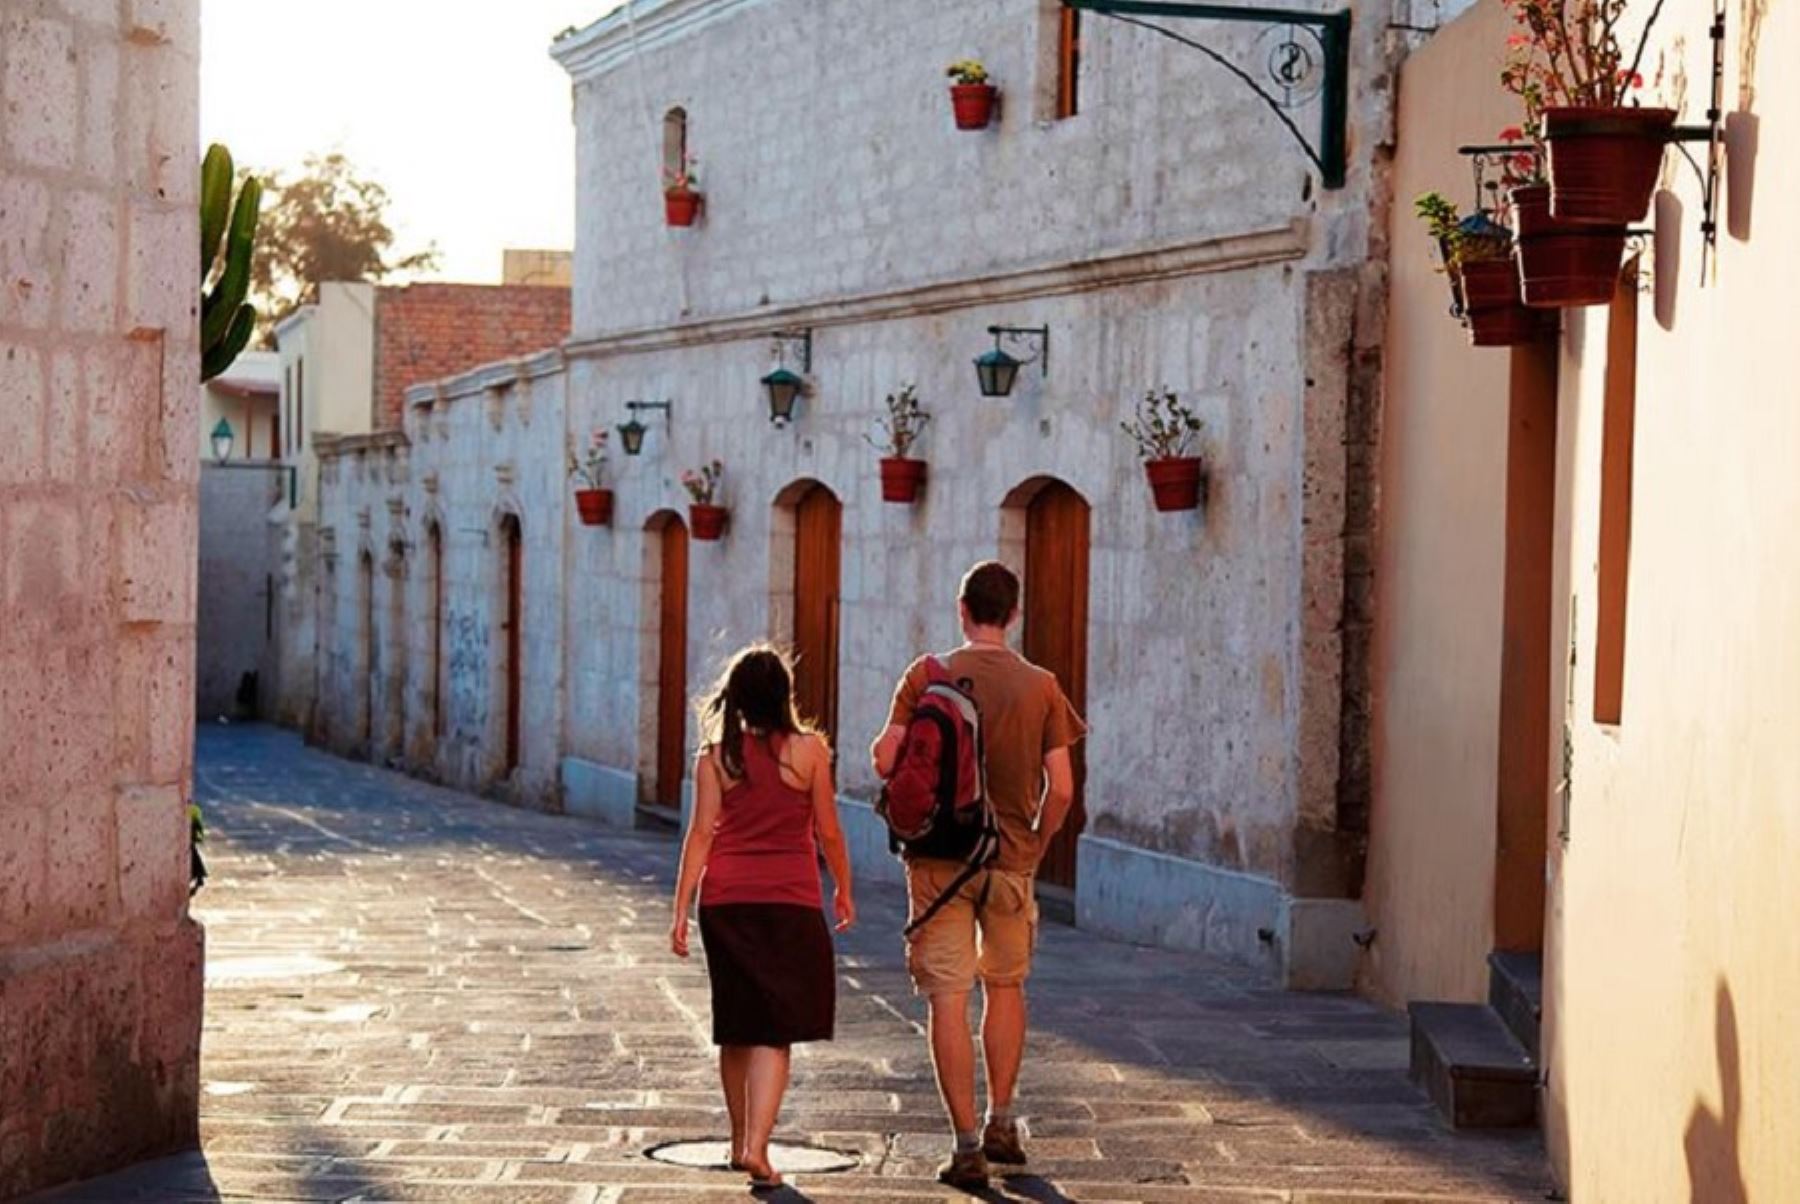 Barrio de San Lázaro, el más antiguo y emblemático de la ciudad de Arequipa, uno de sus atractivos turísticos que pueden visitarse completamente gratis.